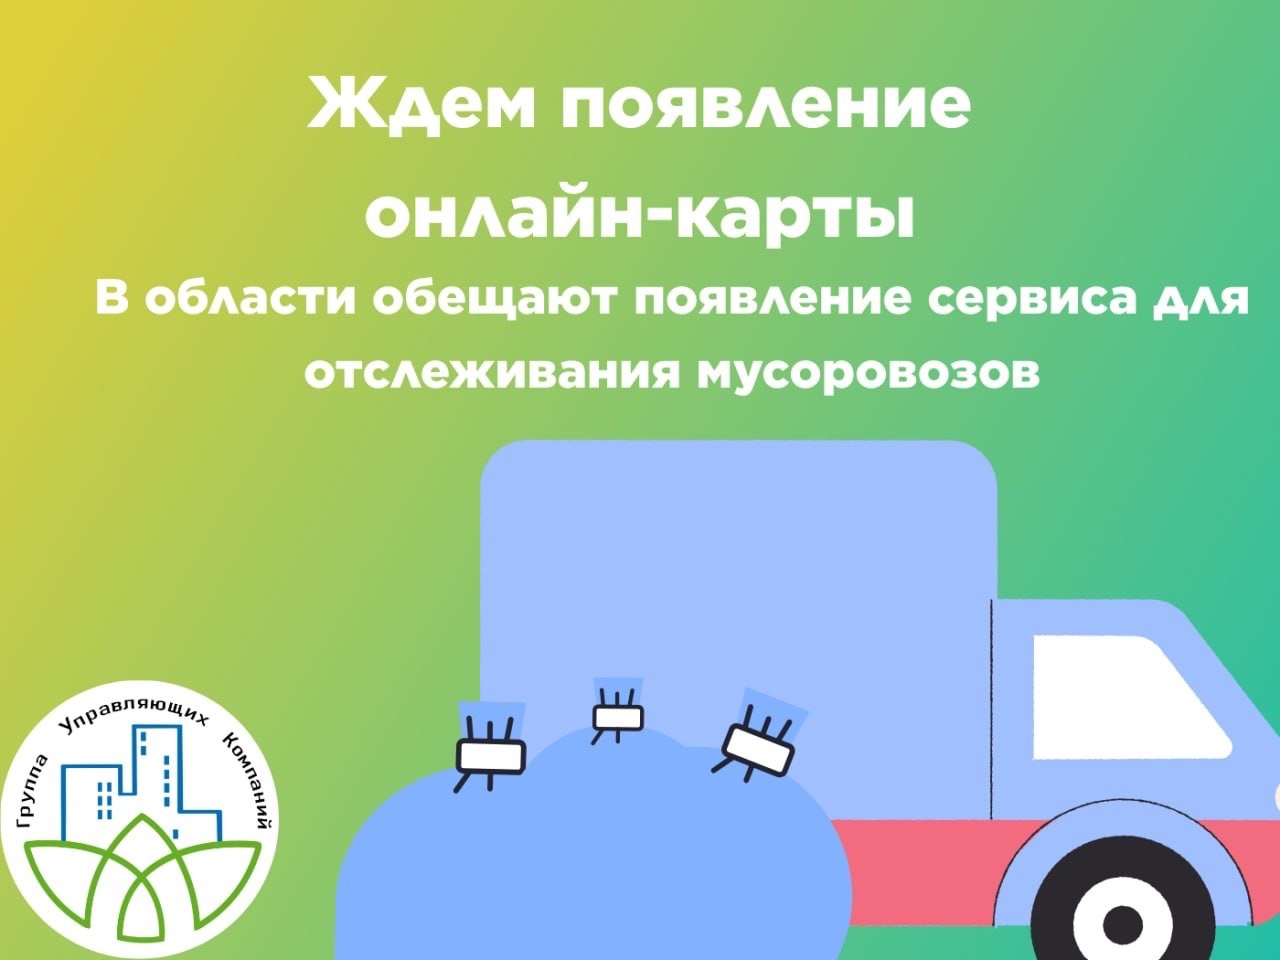 В центре управления регионом пообещали скоро появление онлайн-карты, где будет видно движение всех мусоровозов в Челябинске.
Н...